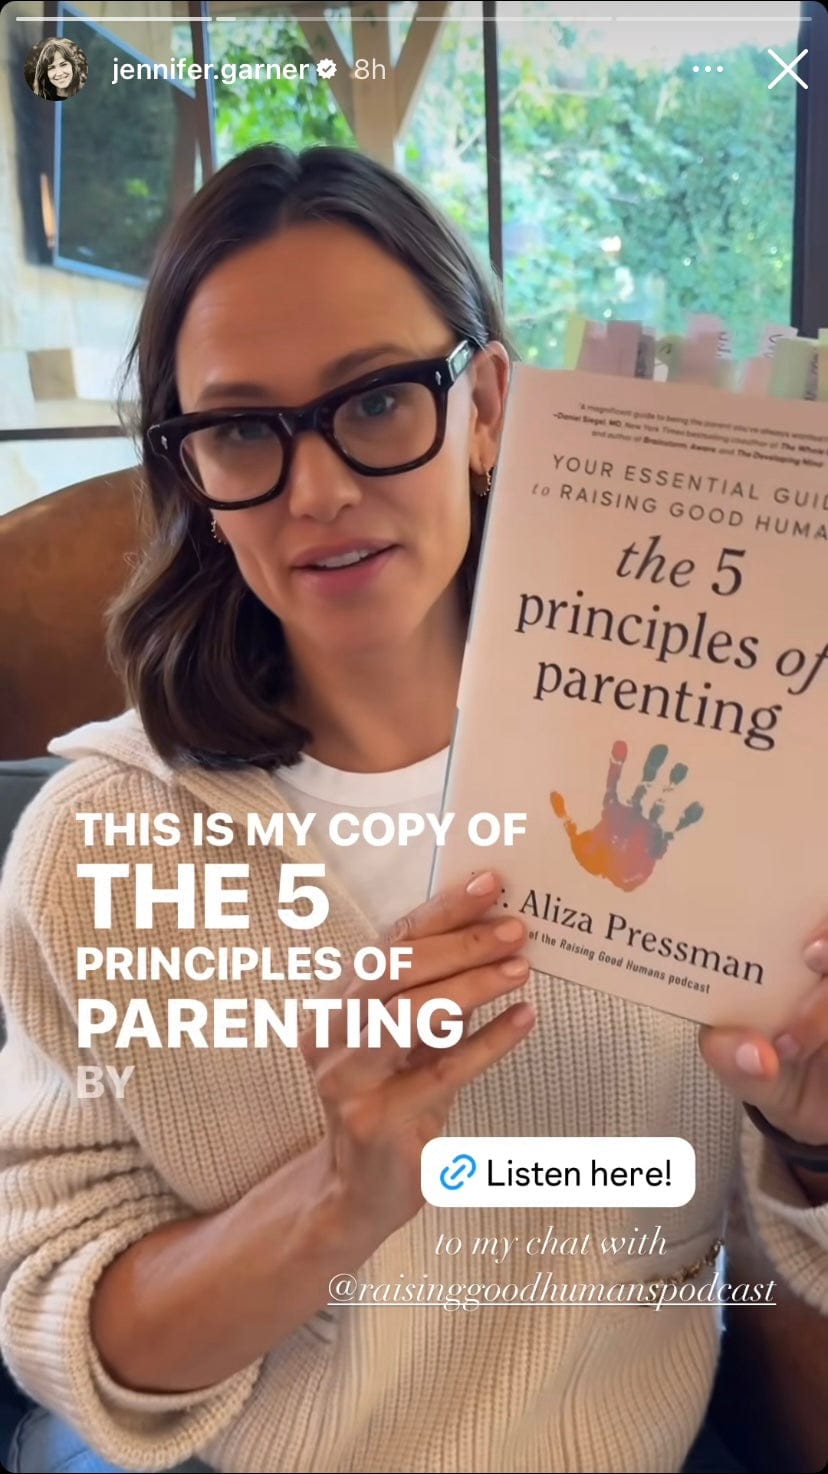 Pressman, Dr Aliza PREORDER NONFICTION New Dr Aliza Pressman: The Five Principles of Parenting [2024] hardback